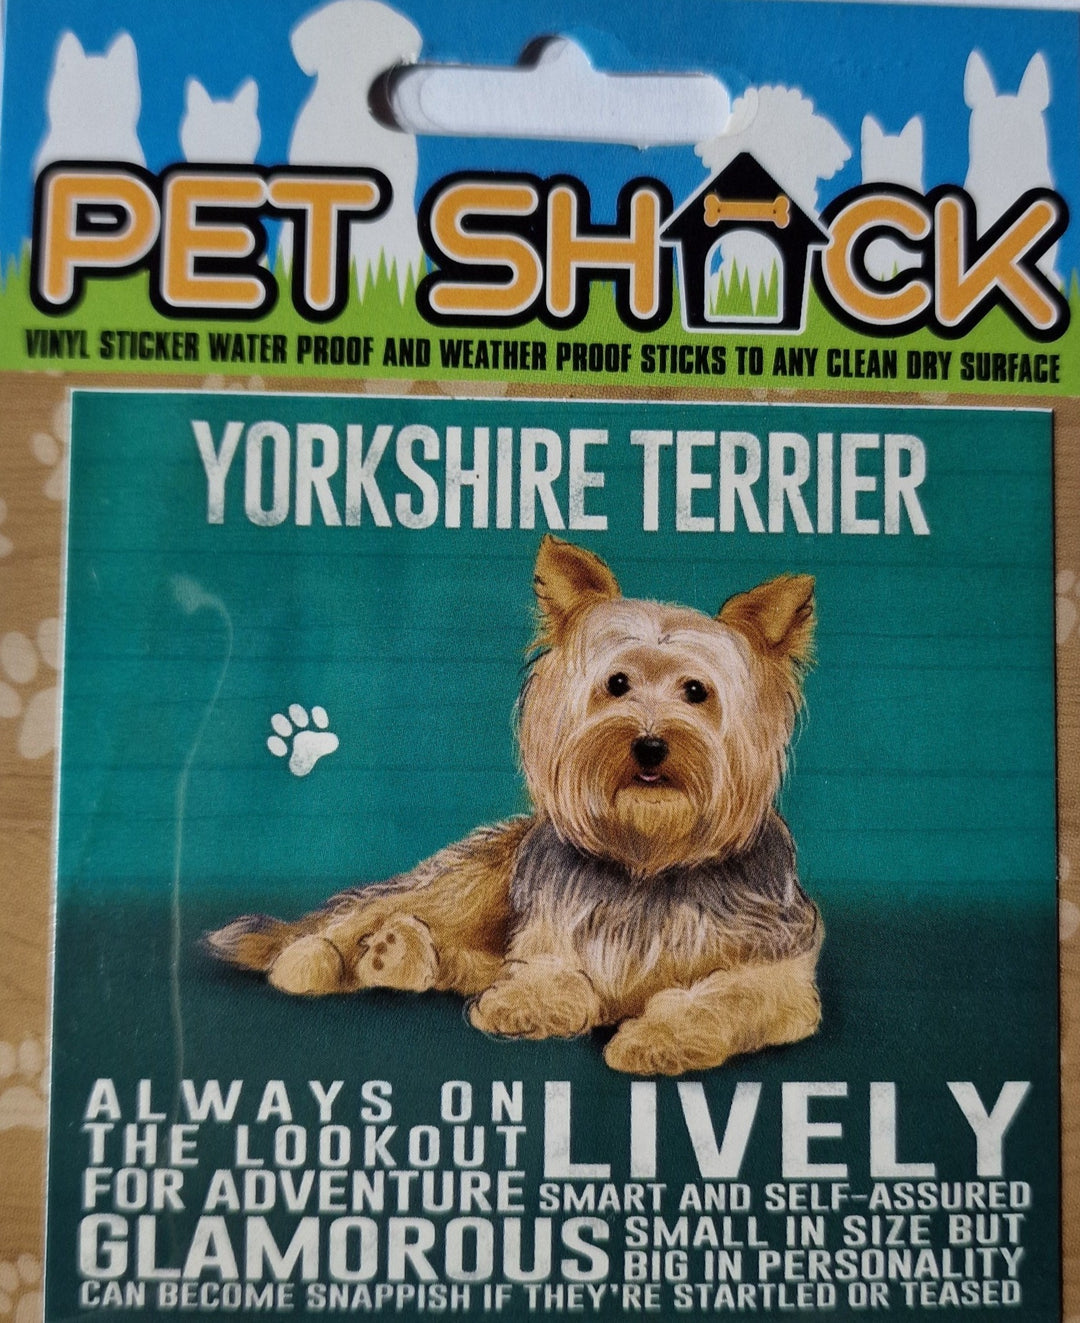 Aufkleber aus der "Pet Shack"- Reihe . "Yorkshire Terrier"